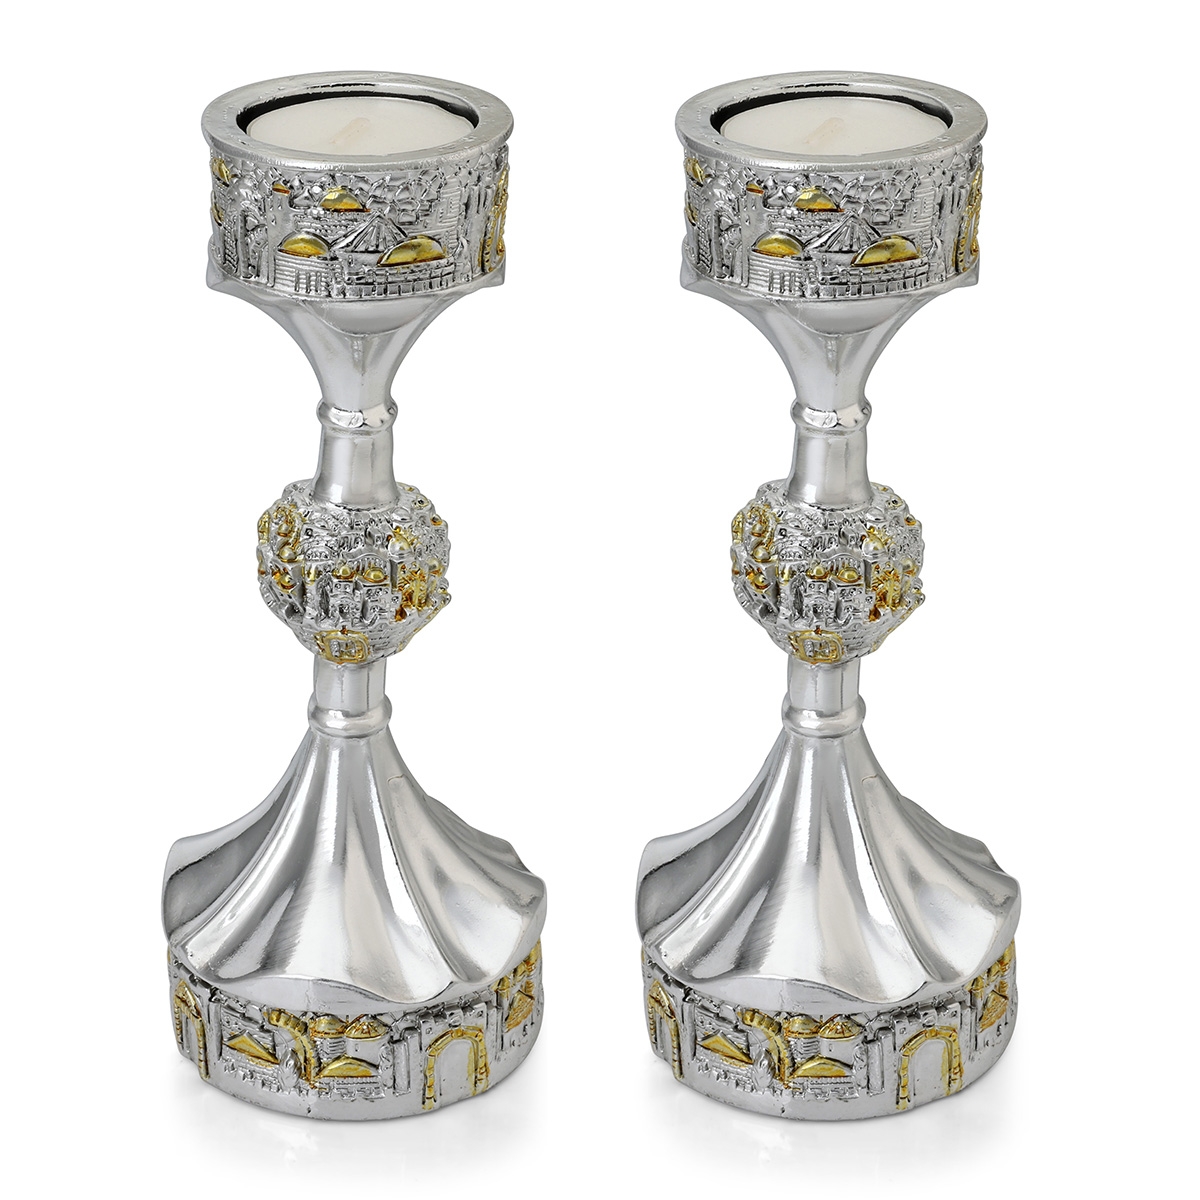 Silver Plated Tea Light Candlesticks with Golden Highlights - Jerusalem - 1